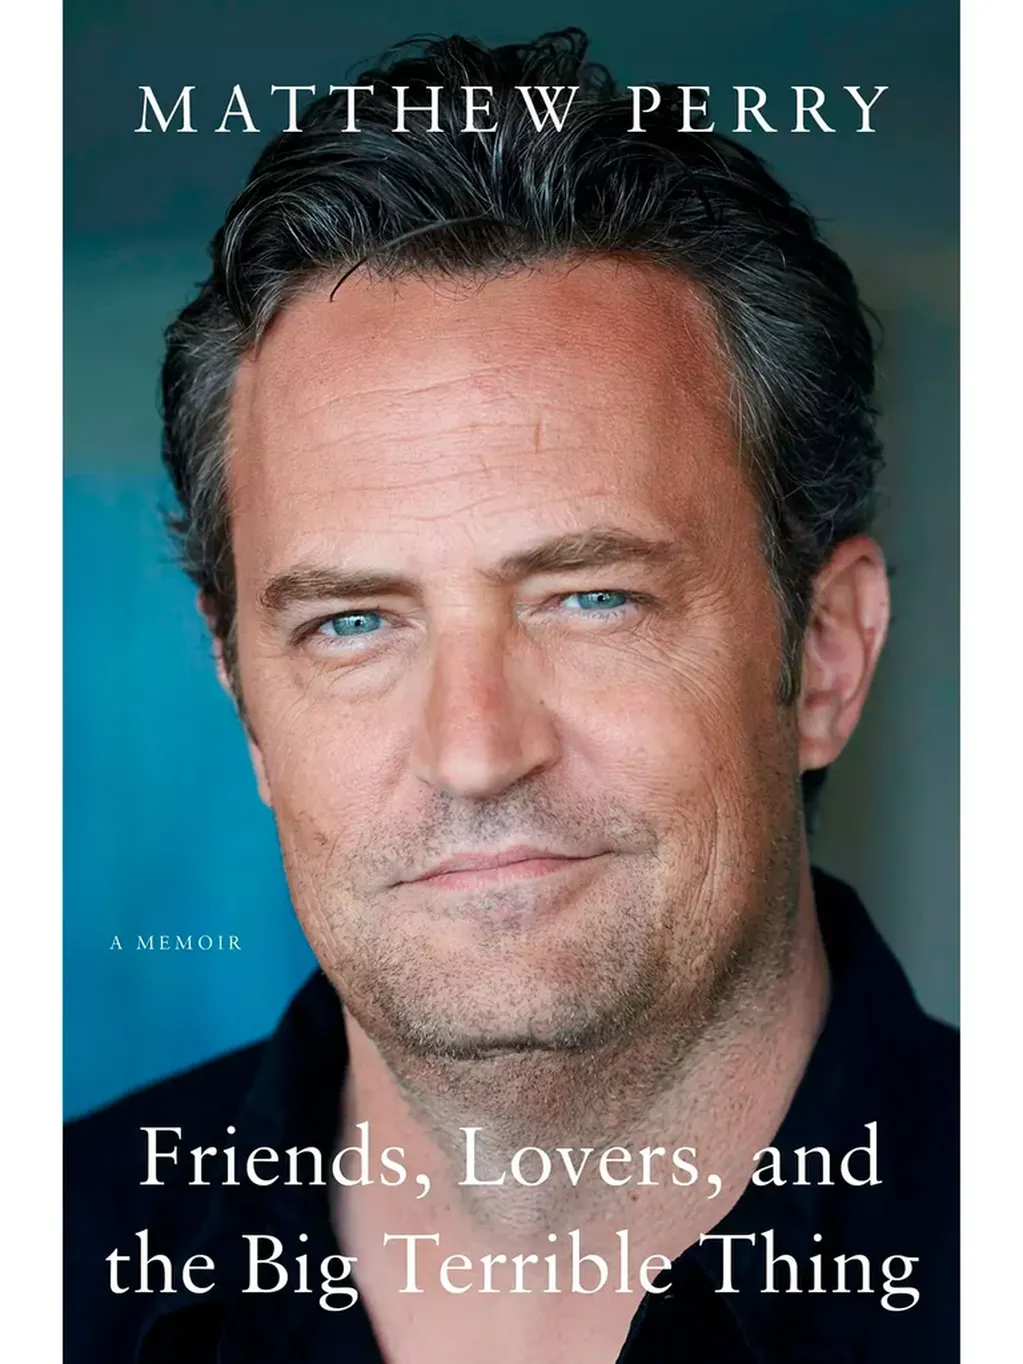 “Amigos, amantes y aquello tan terrible”, el libro de Matthew Perry. Foto: Instagram. 